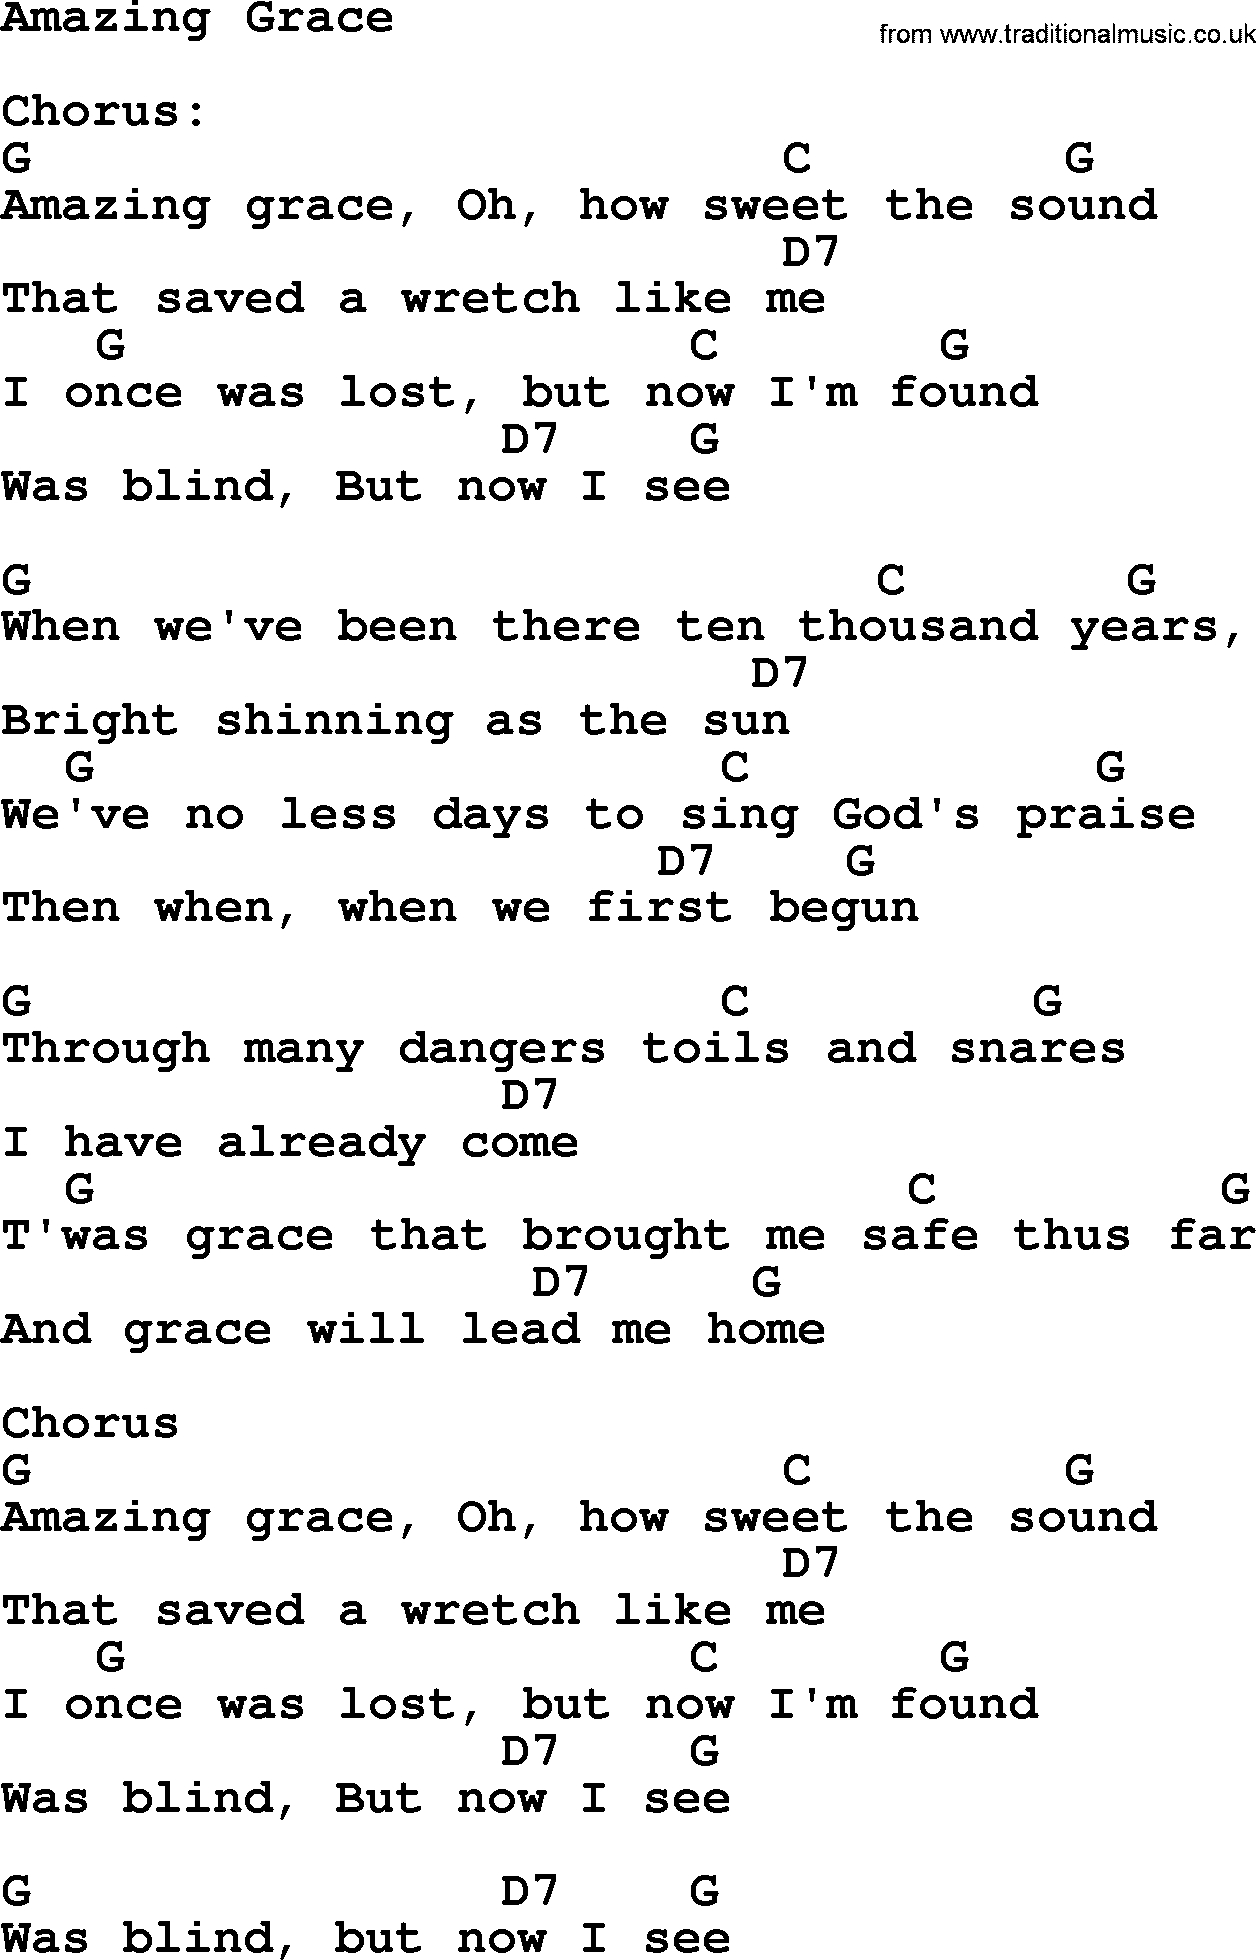 Amazing Grace Chords Amazing Grace Elvis Presley Lyrics And Chords